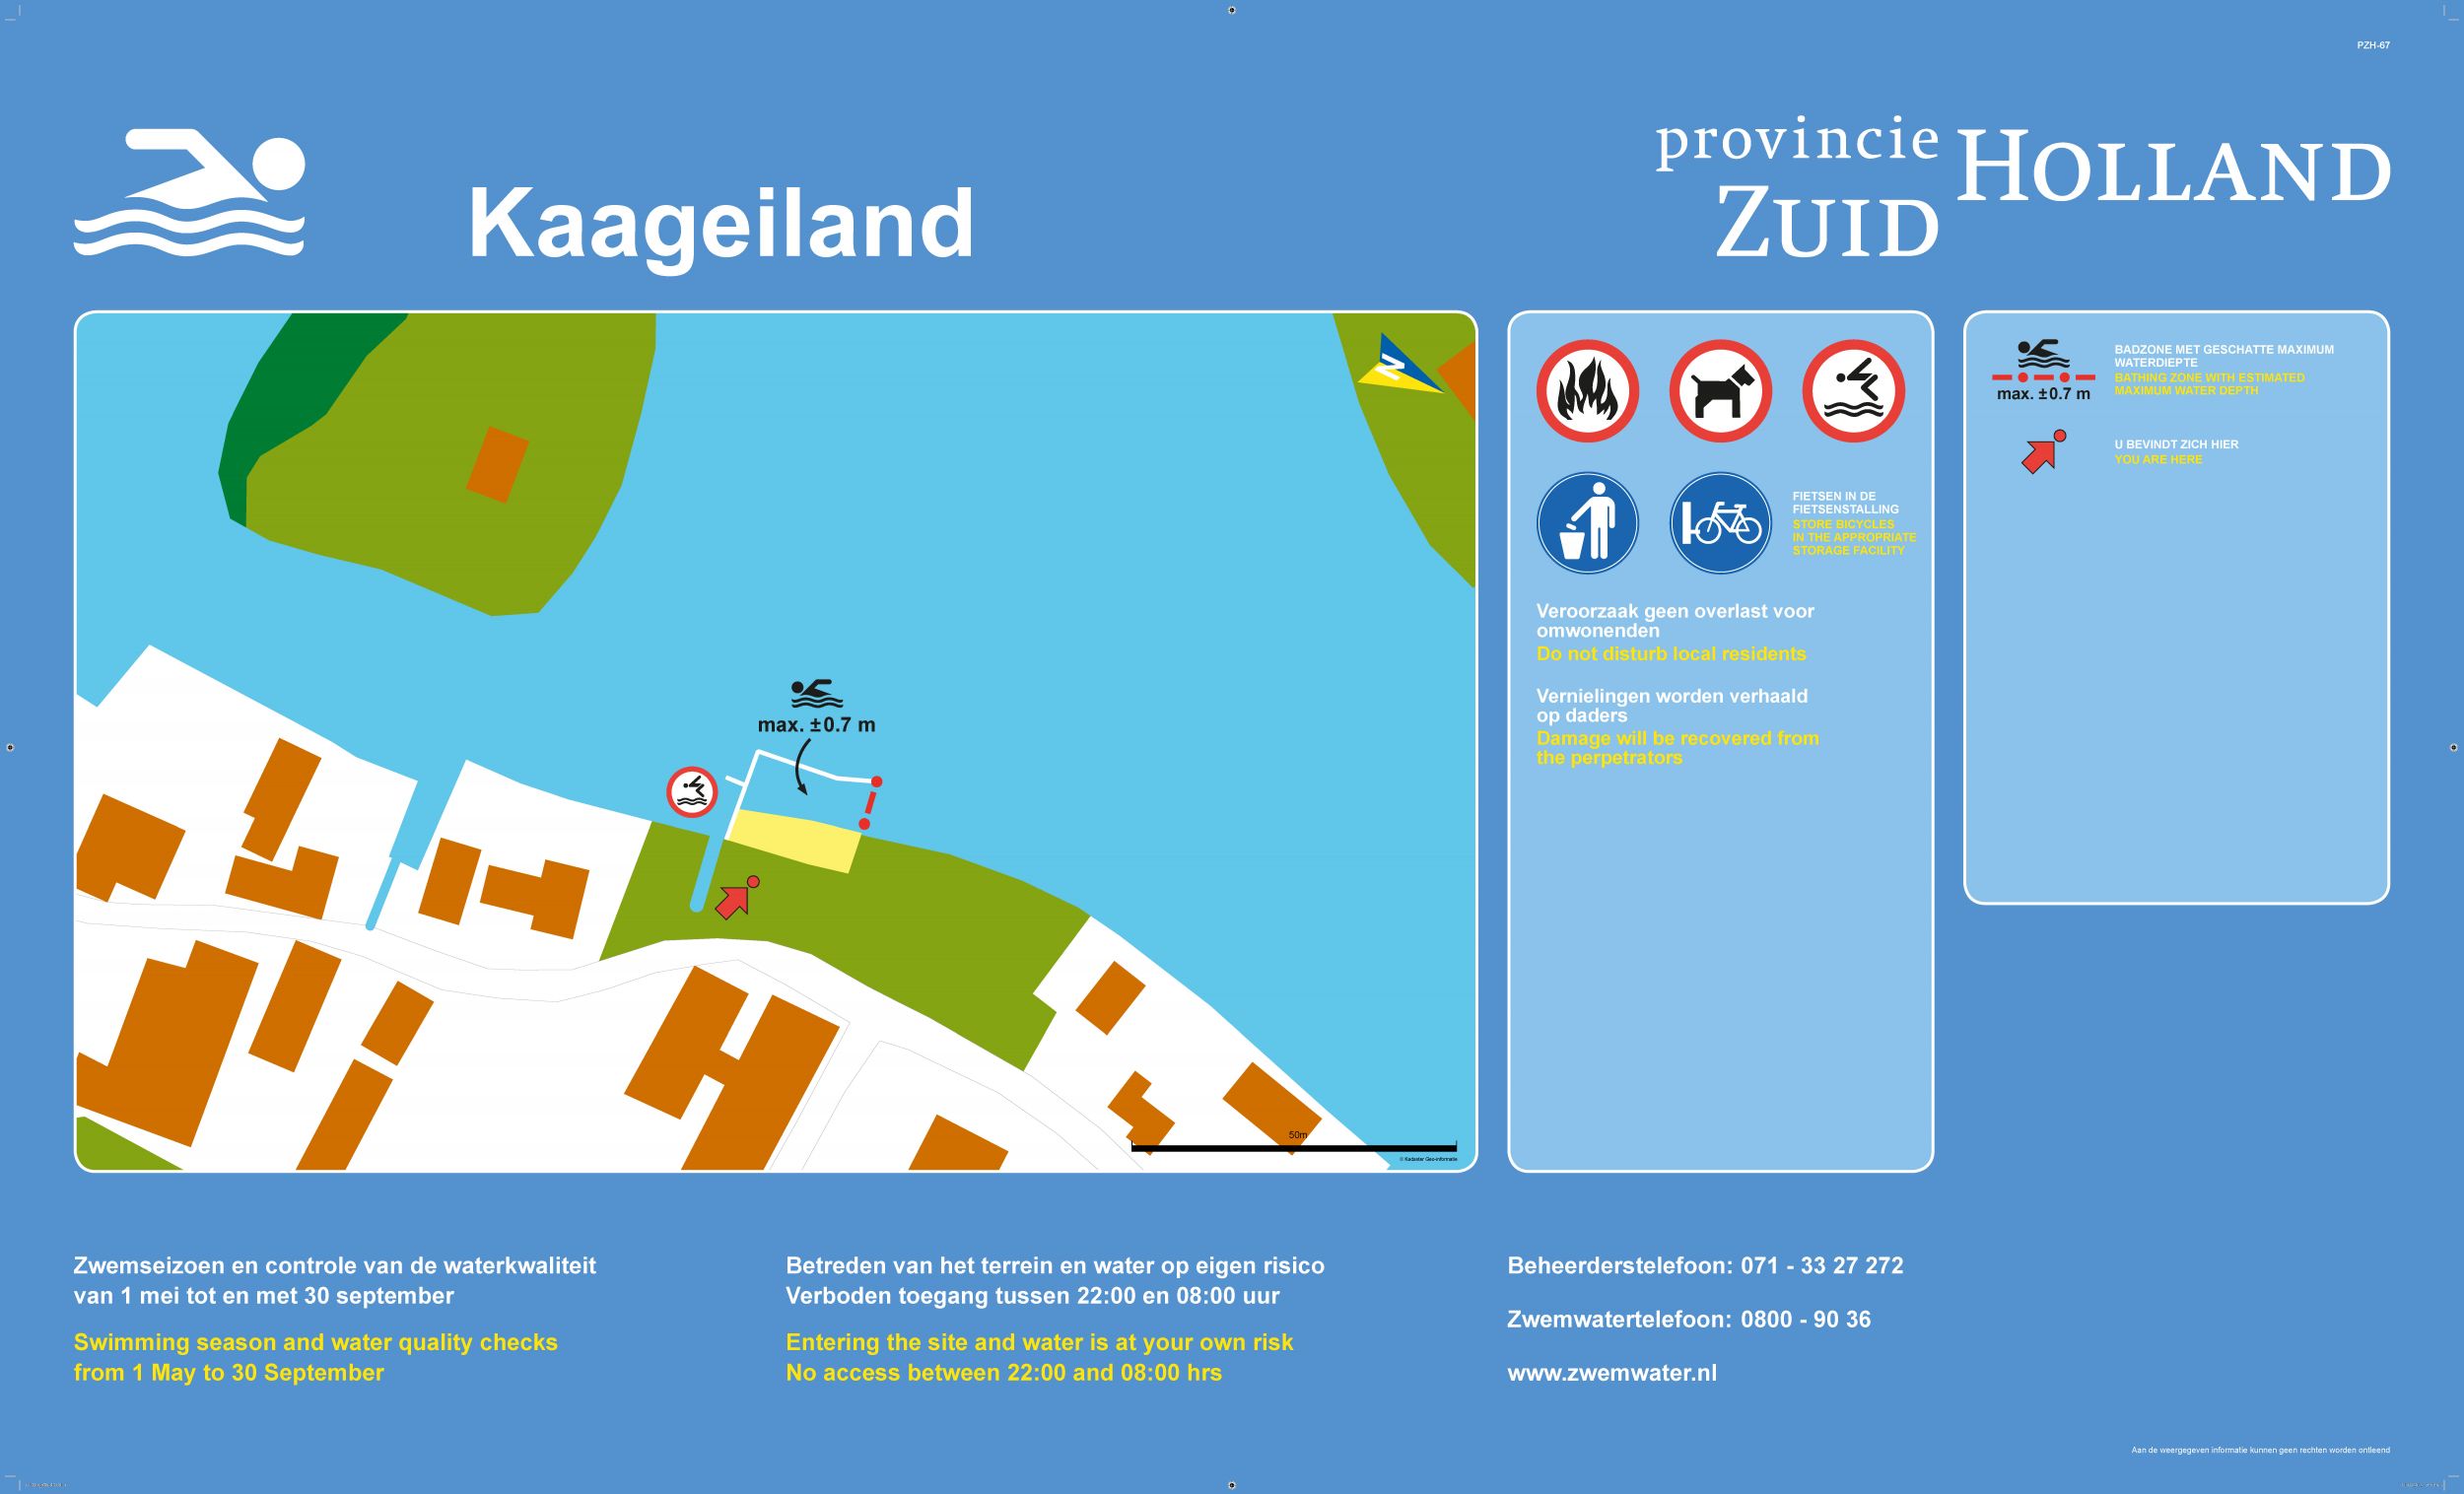 Het informatiebord bij zwemlocatie Kaageiland